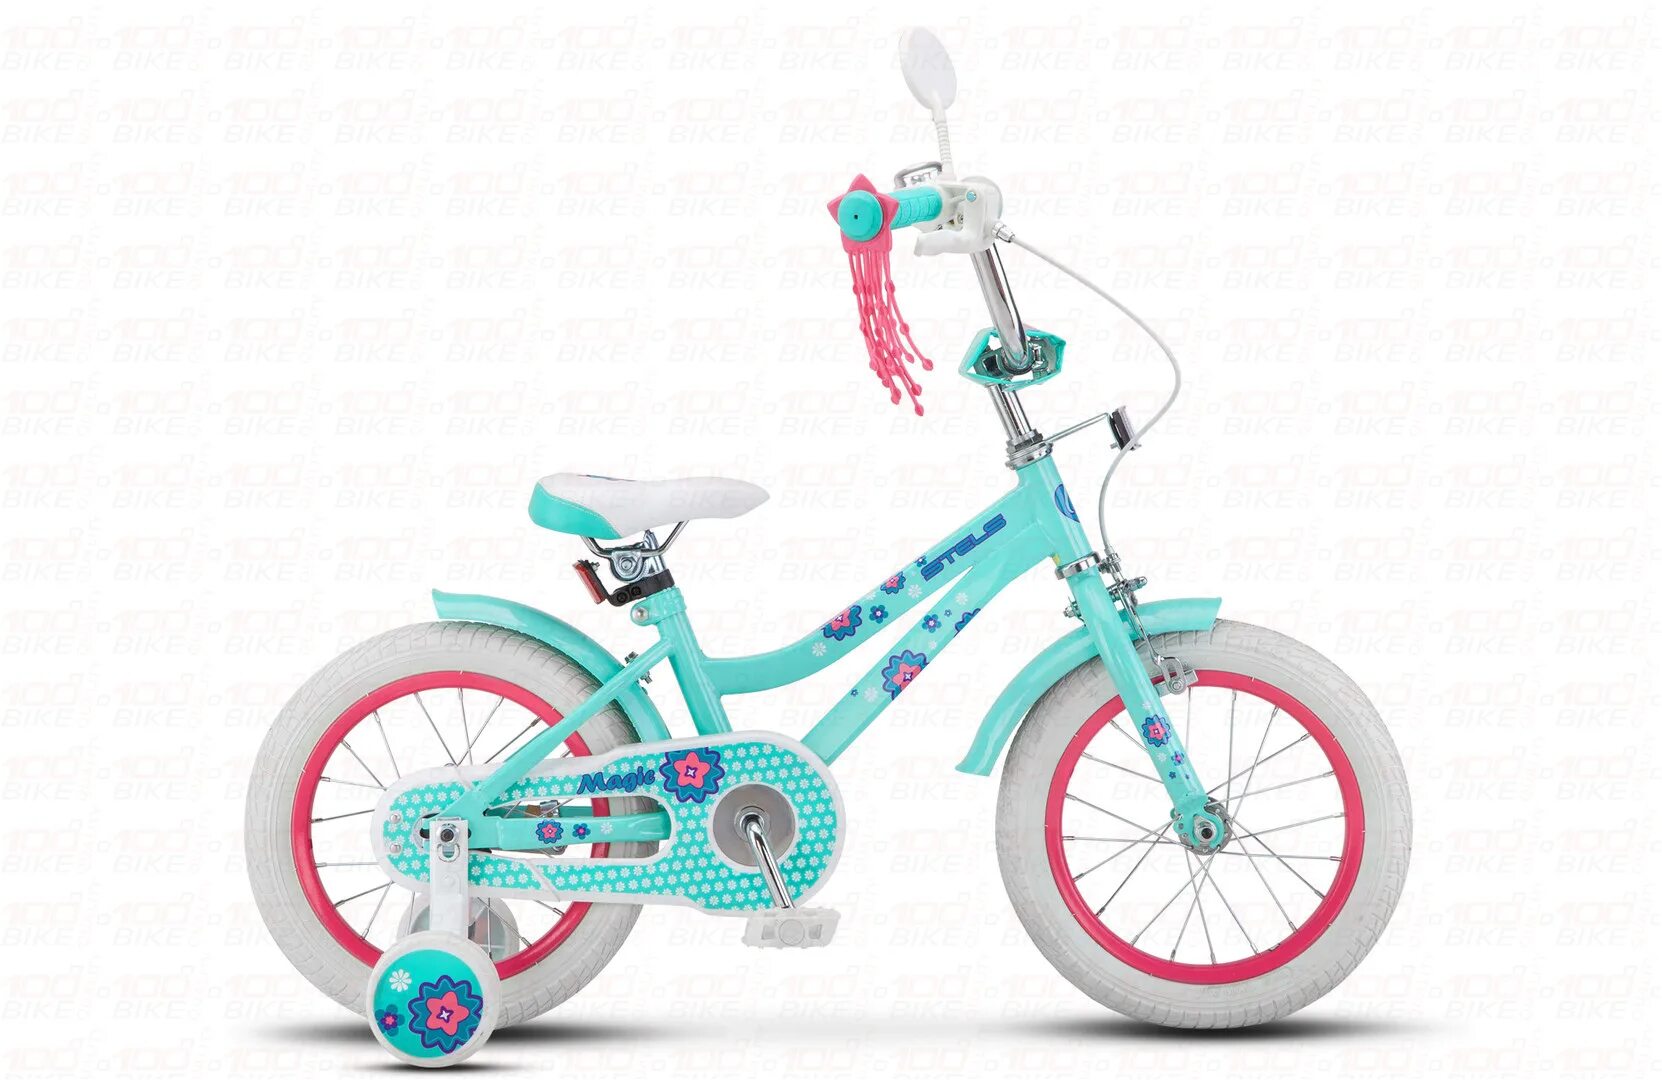 Велосипед для девочки 14 дюймов. Стелс Магик велосипед. Велосипед стелс 14 дюймов для девочки. Стелс Мэджик 14. Детский велосипед стелс 14.